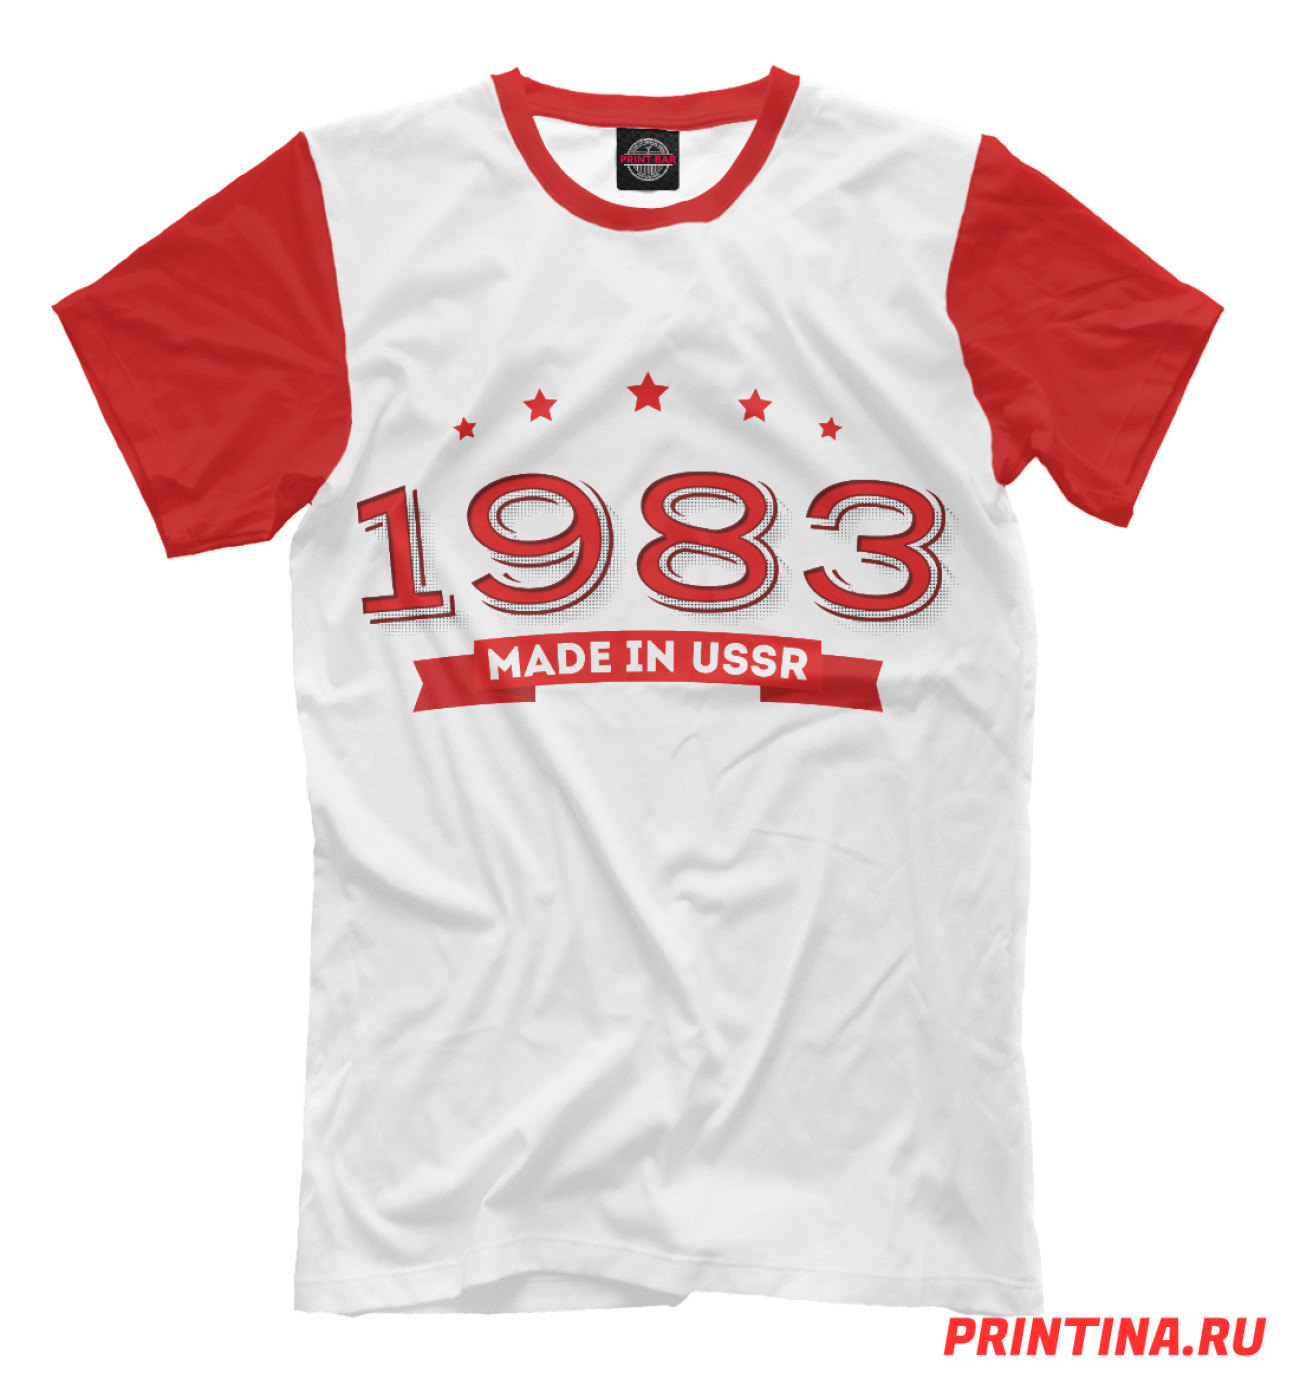 Мужская Футболка Made in 1983 USSR, артикул: DVT-193372-fut-2